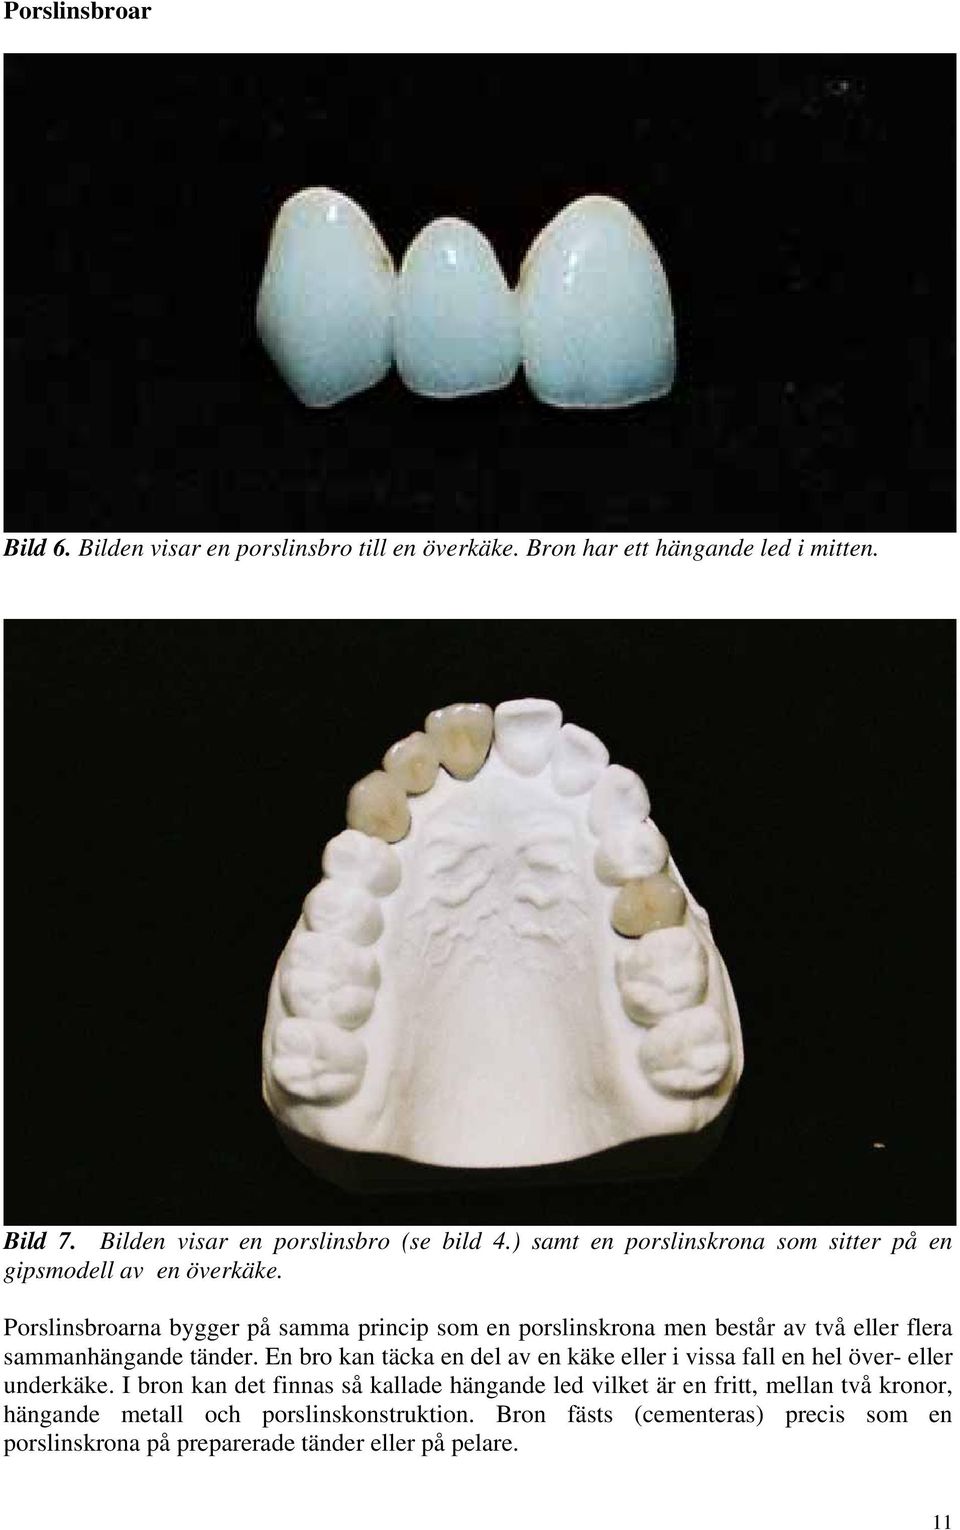 Porslinsbroarna bygger på samma princip som en porslinskrona men består av två eller flera sammanhängande tänder.